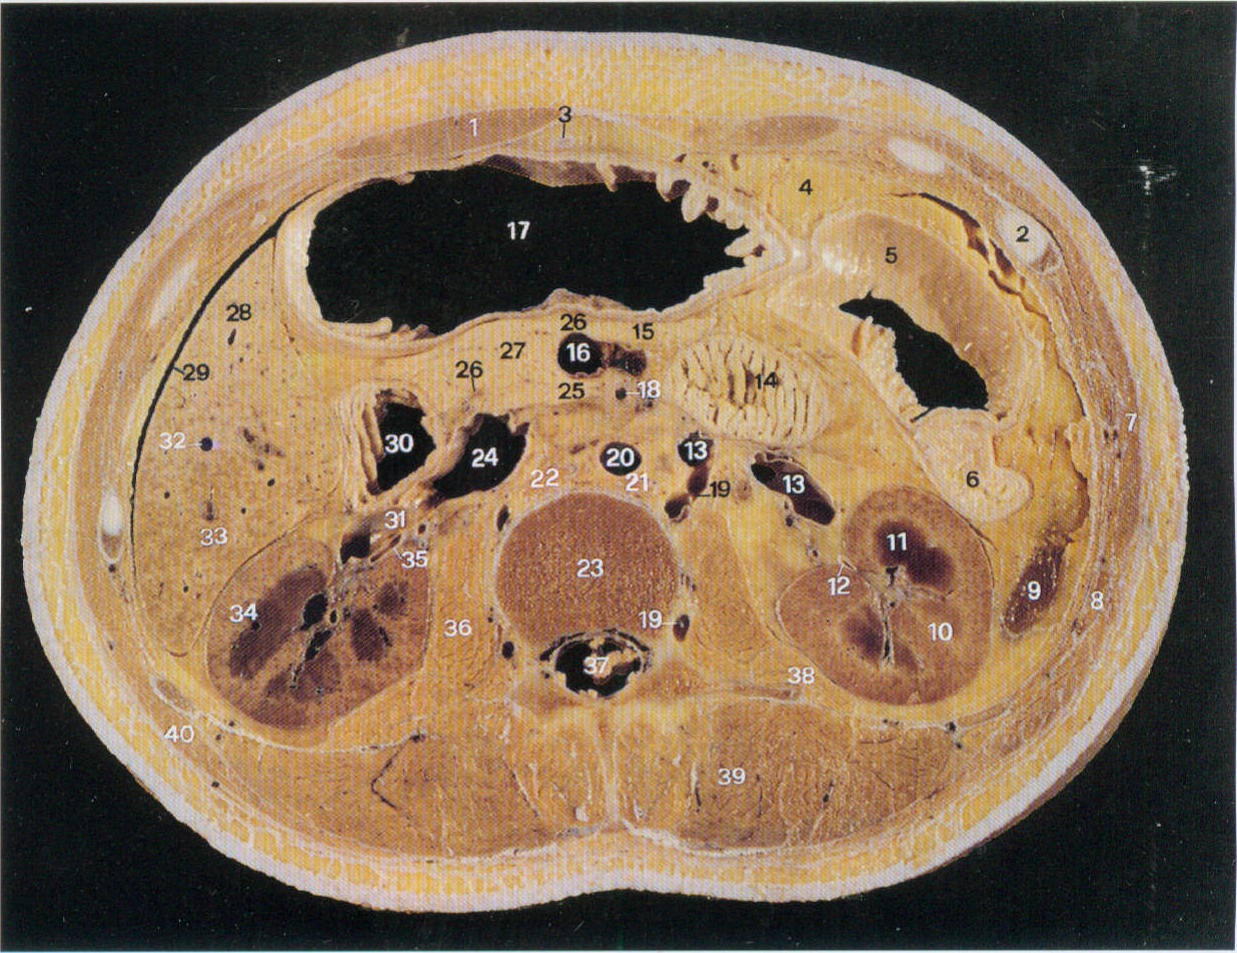 大网膜ct解剖图片